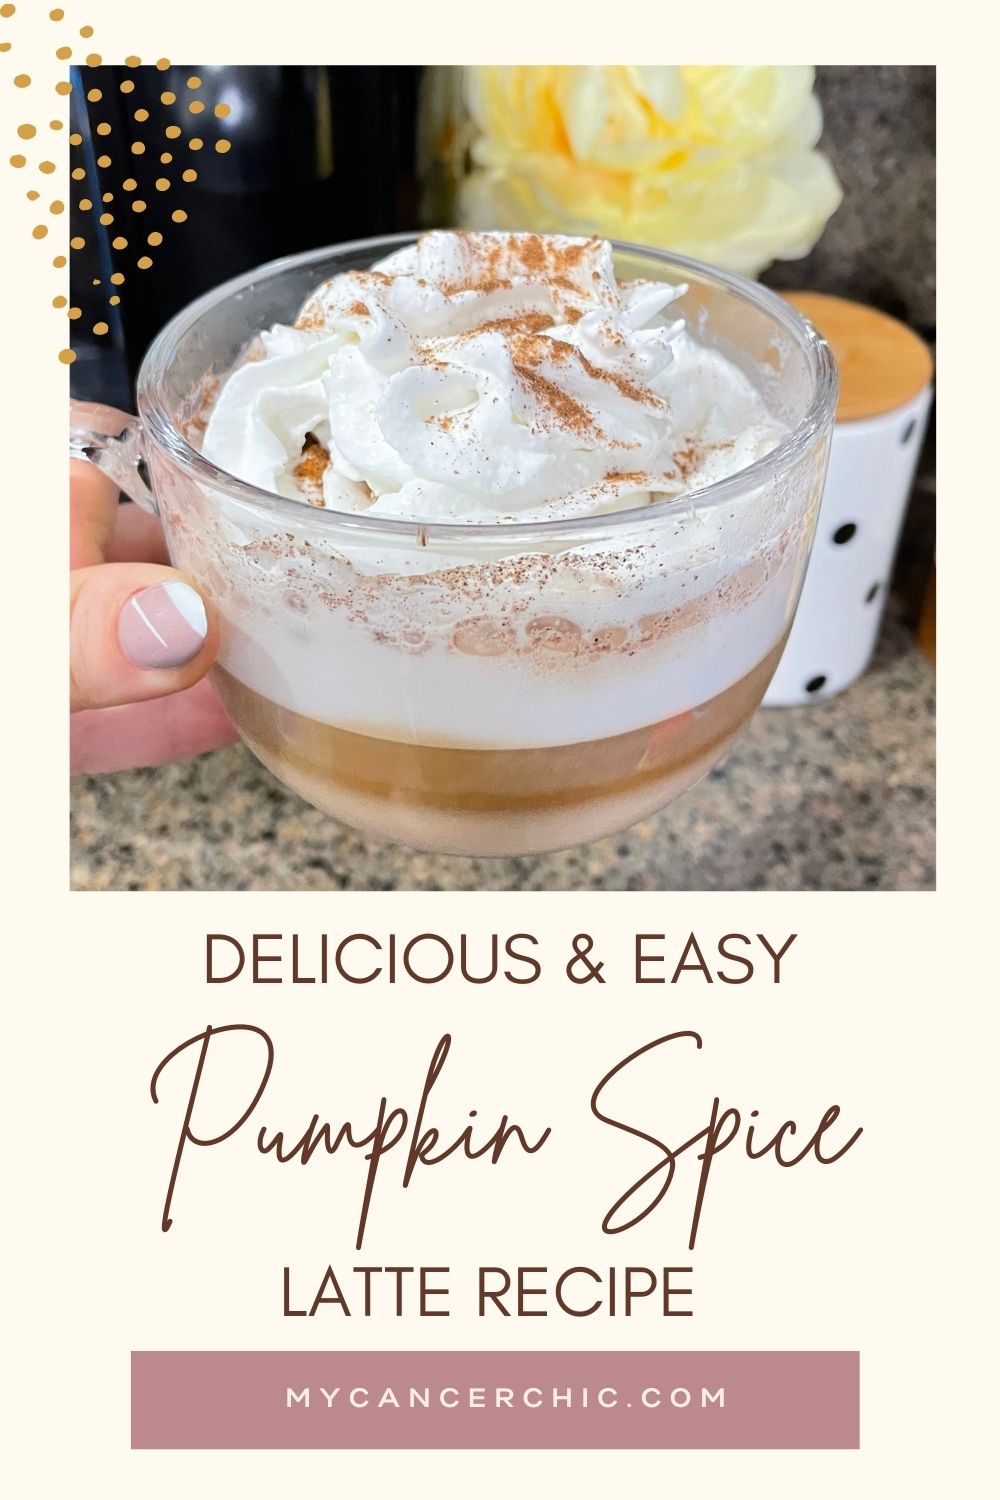 Pumpkin Spice Latte Recipe - fall coffee recipes